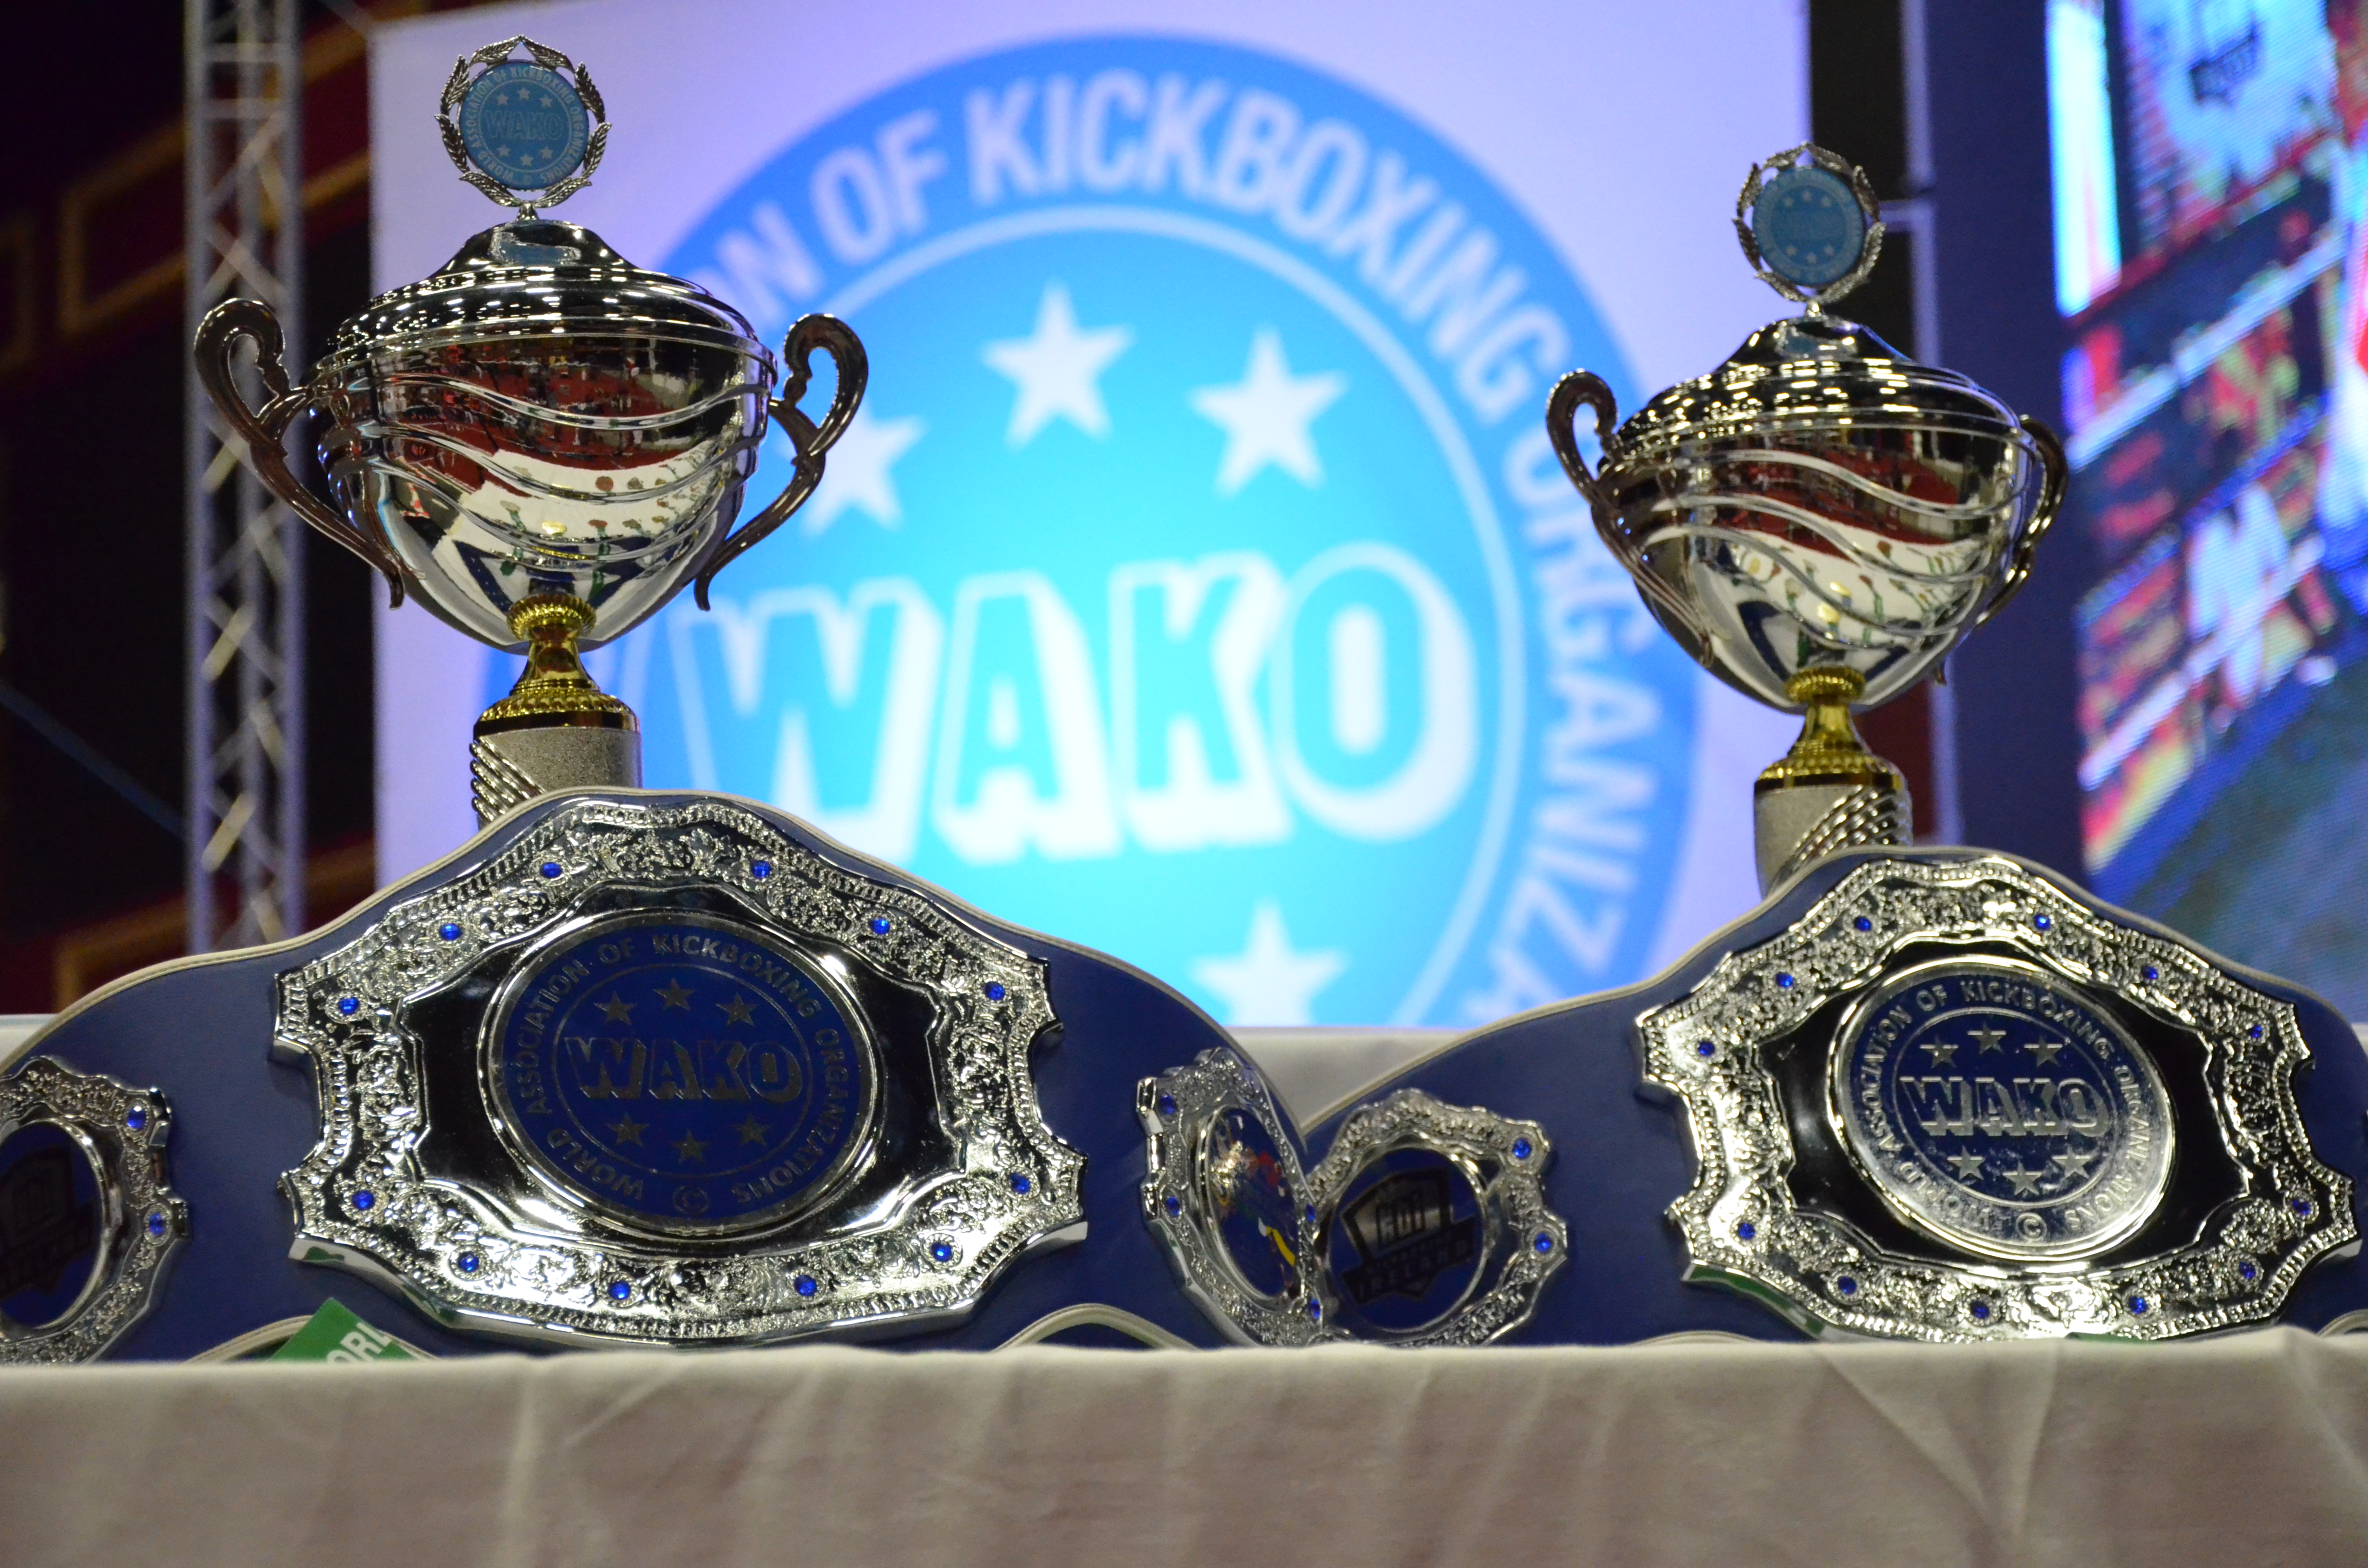 7. Uluslararası Kick Boks Dünya Kupası - 12-15 Mayıs 2022 - İstanbul